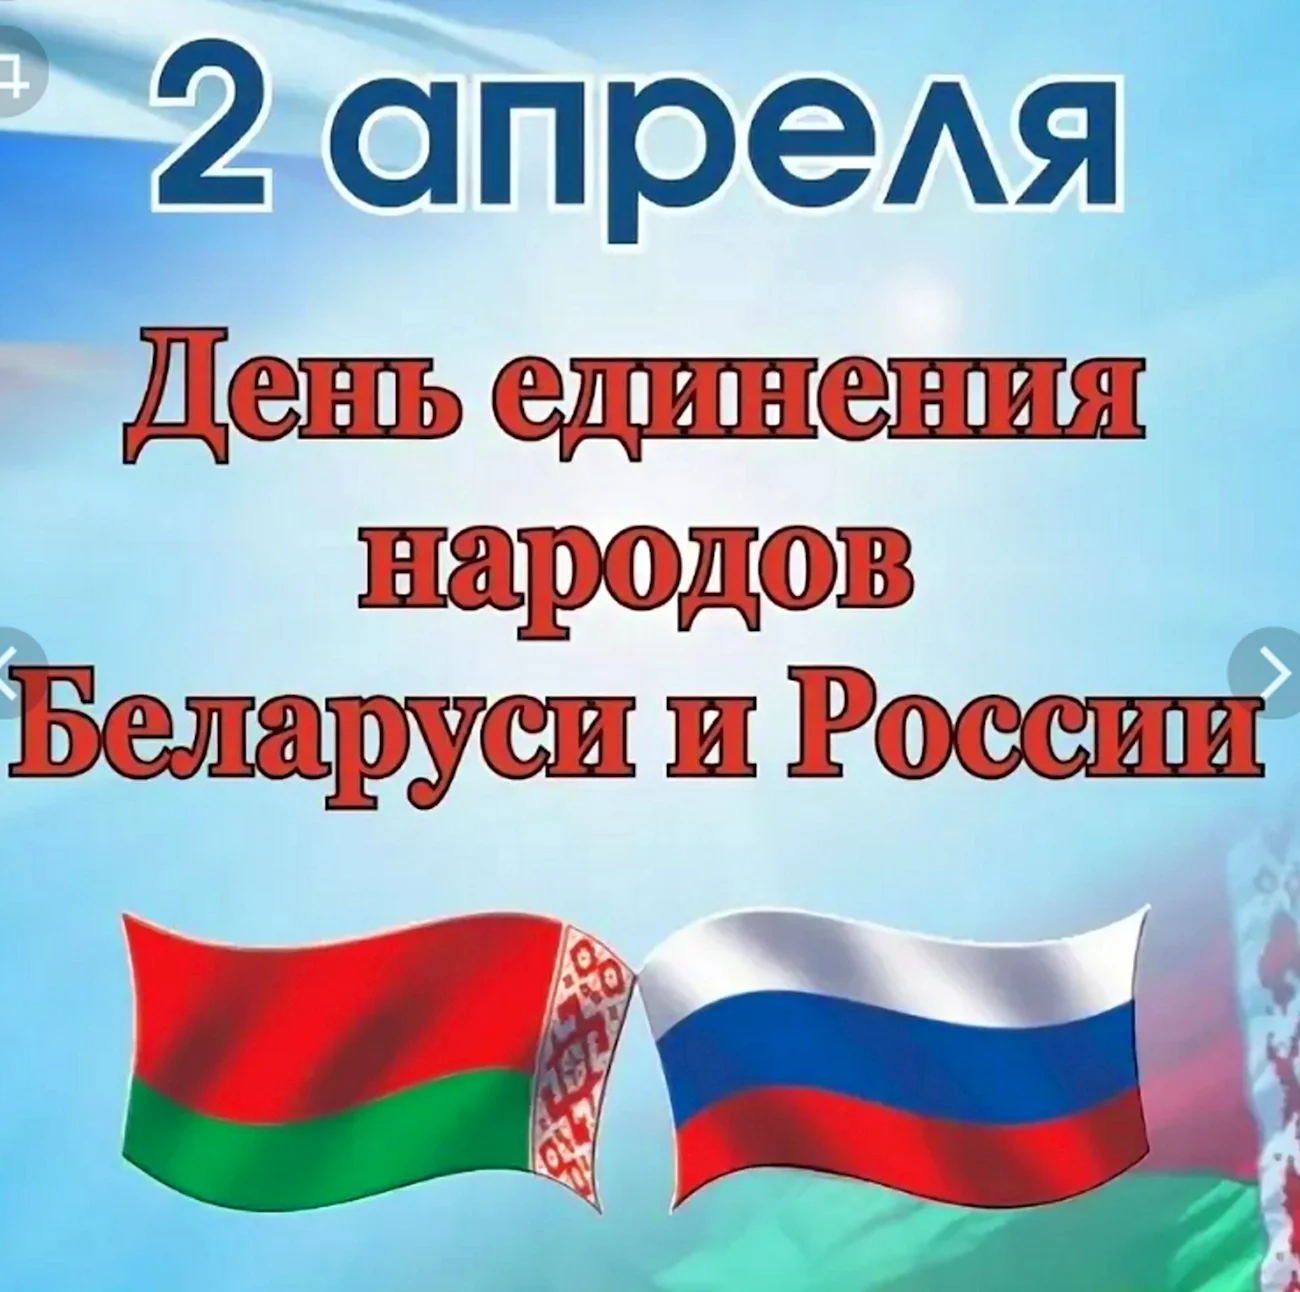 День единства народов России и Белоруссии. Поздравление